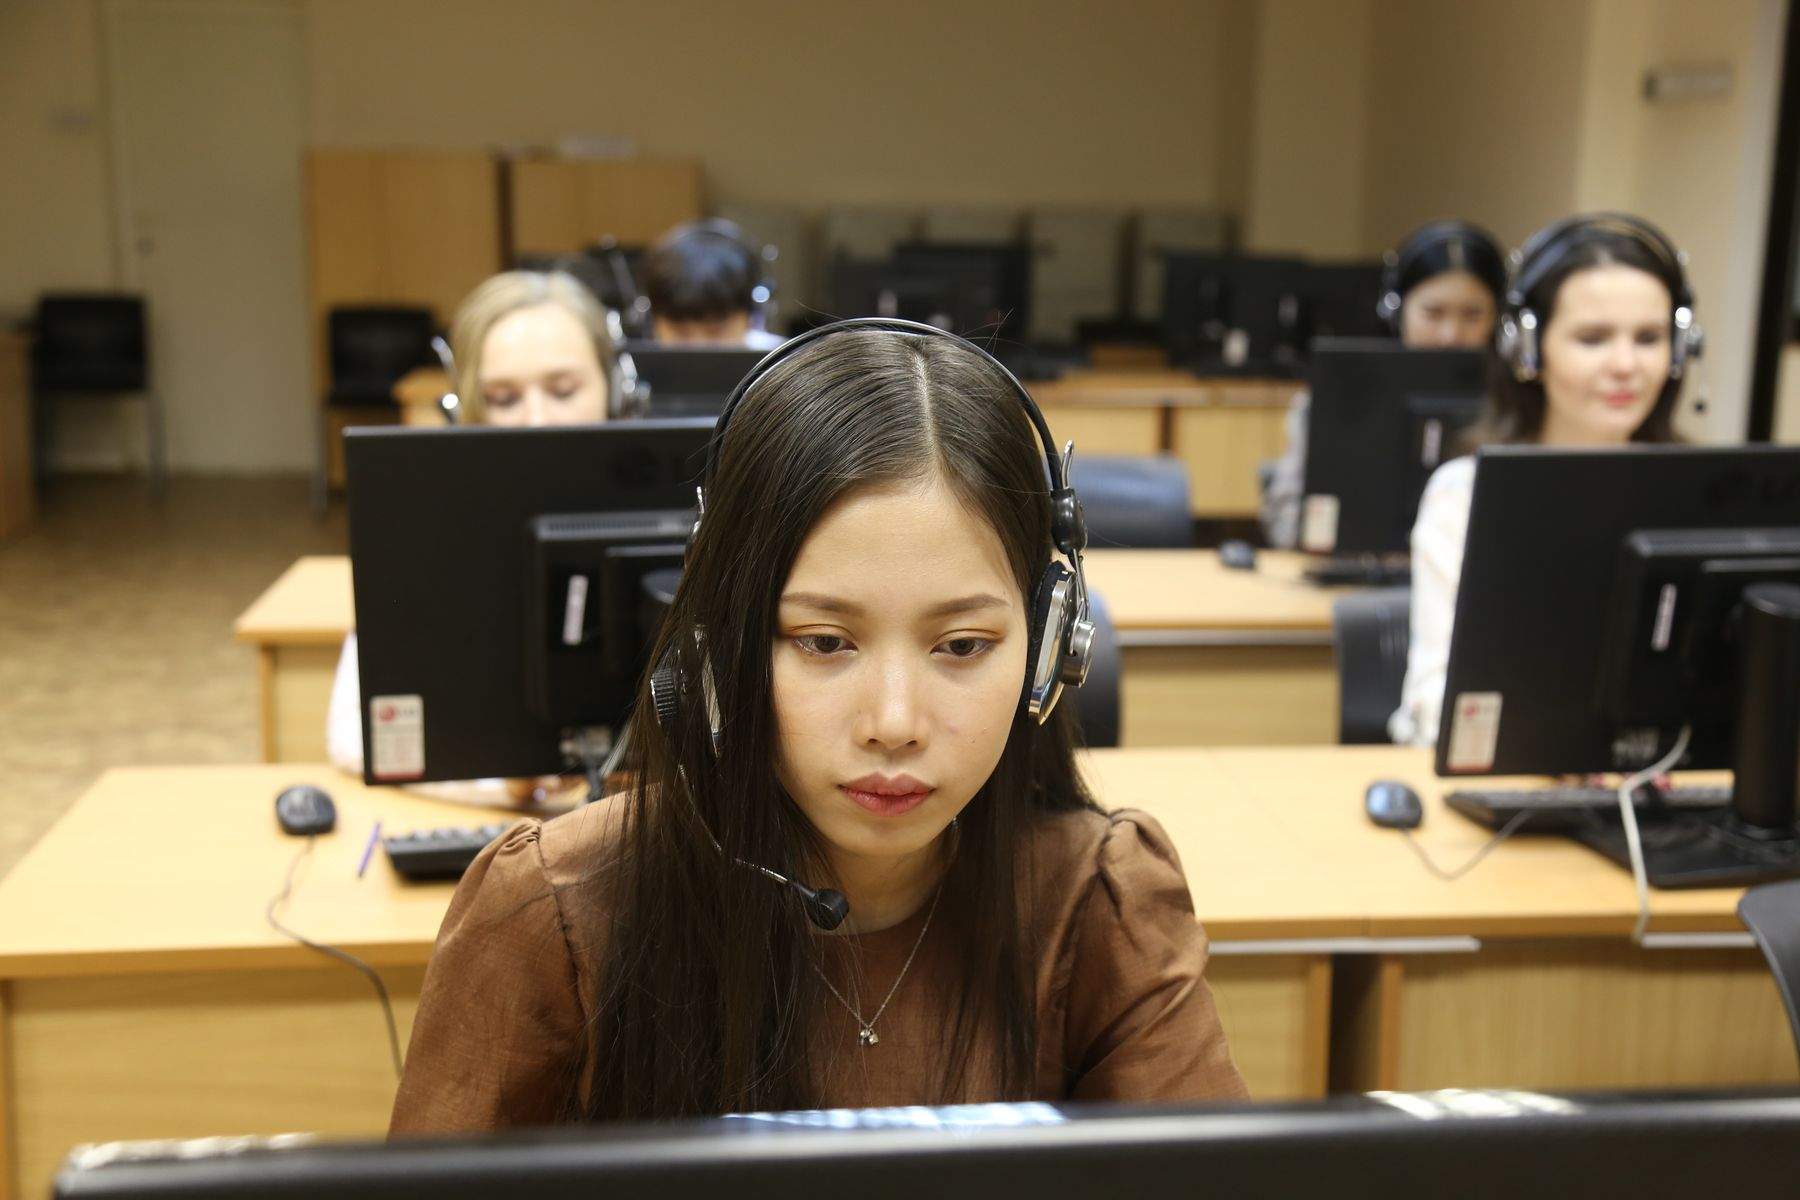 Открытое образование: ВГУЭС запустил массовые онлайн-курсы